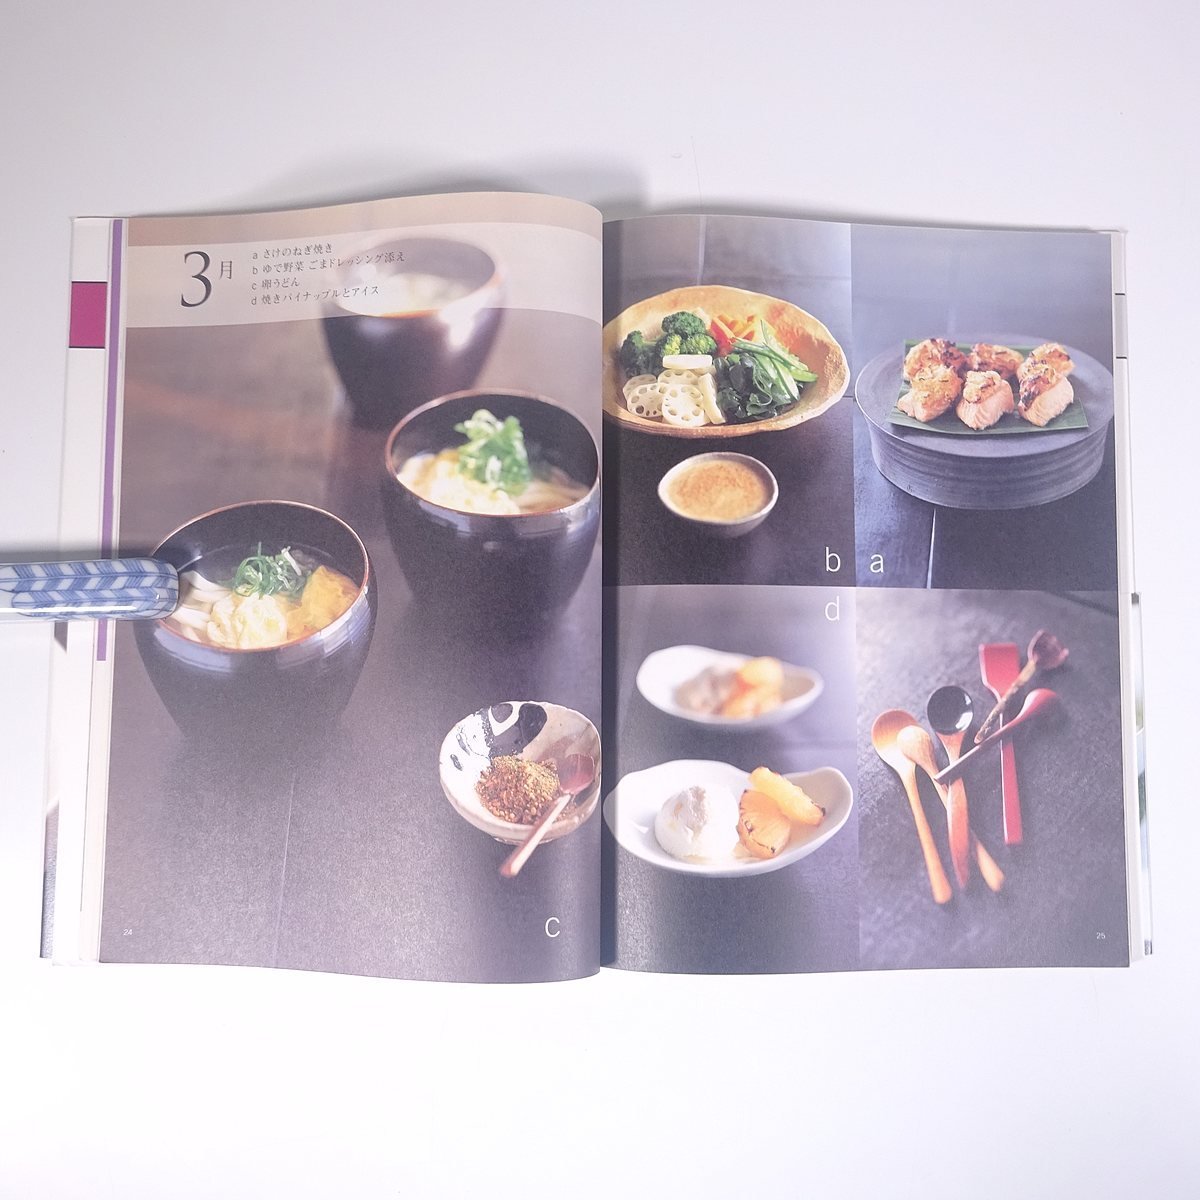 有元葉子の料理教室 講談社MOOK 2002 大型本 料理 献立 レシピ 家庭料理_画像8